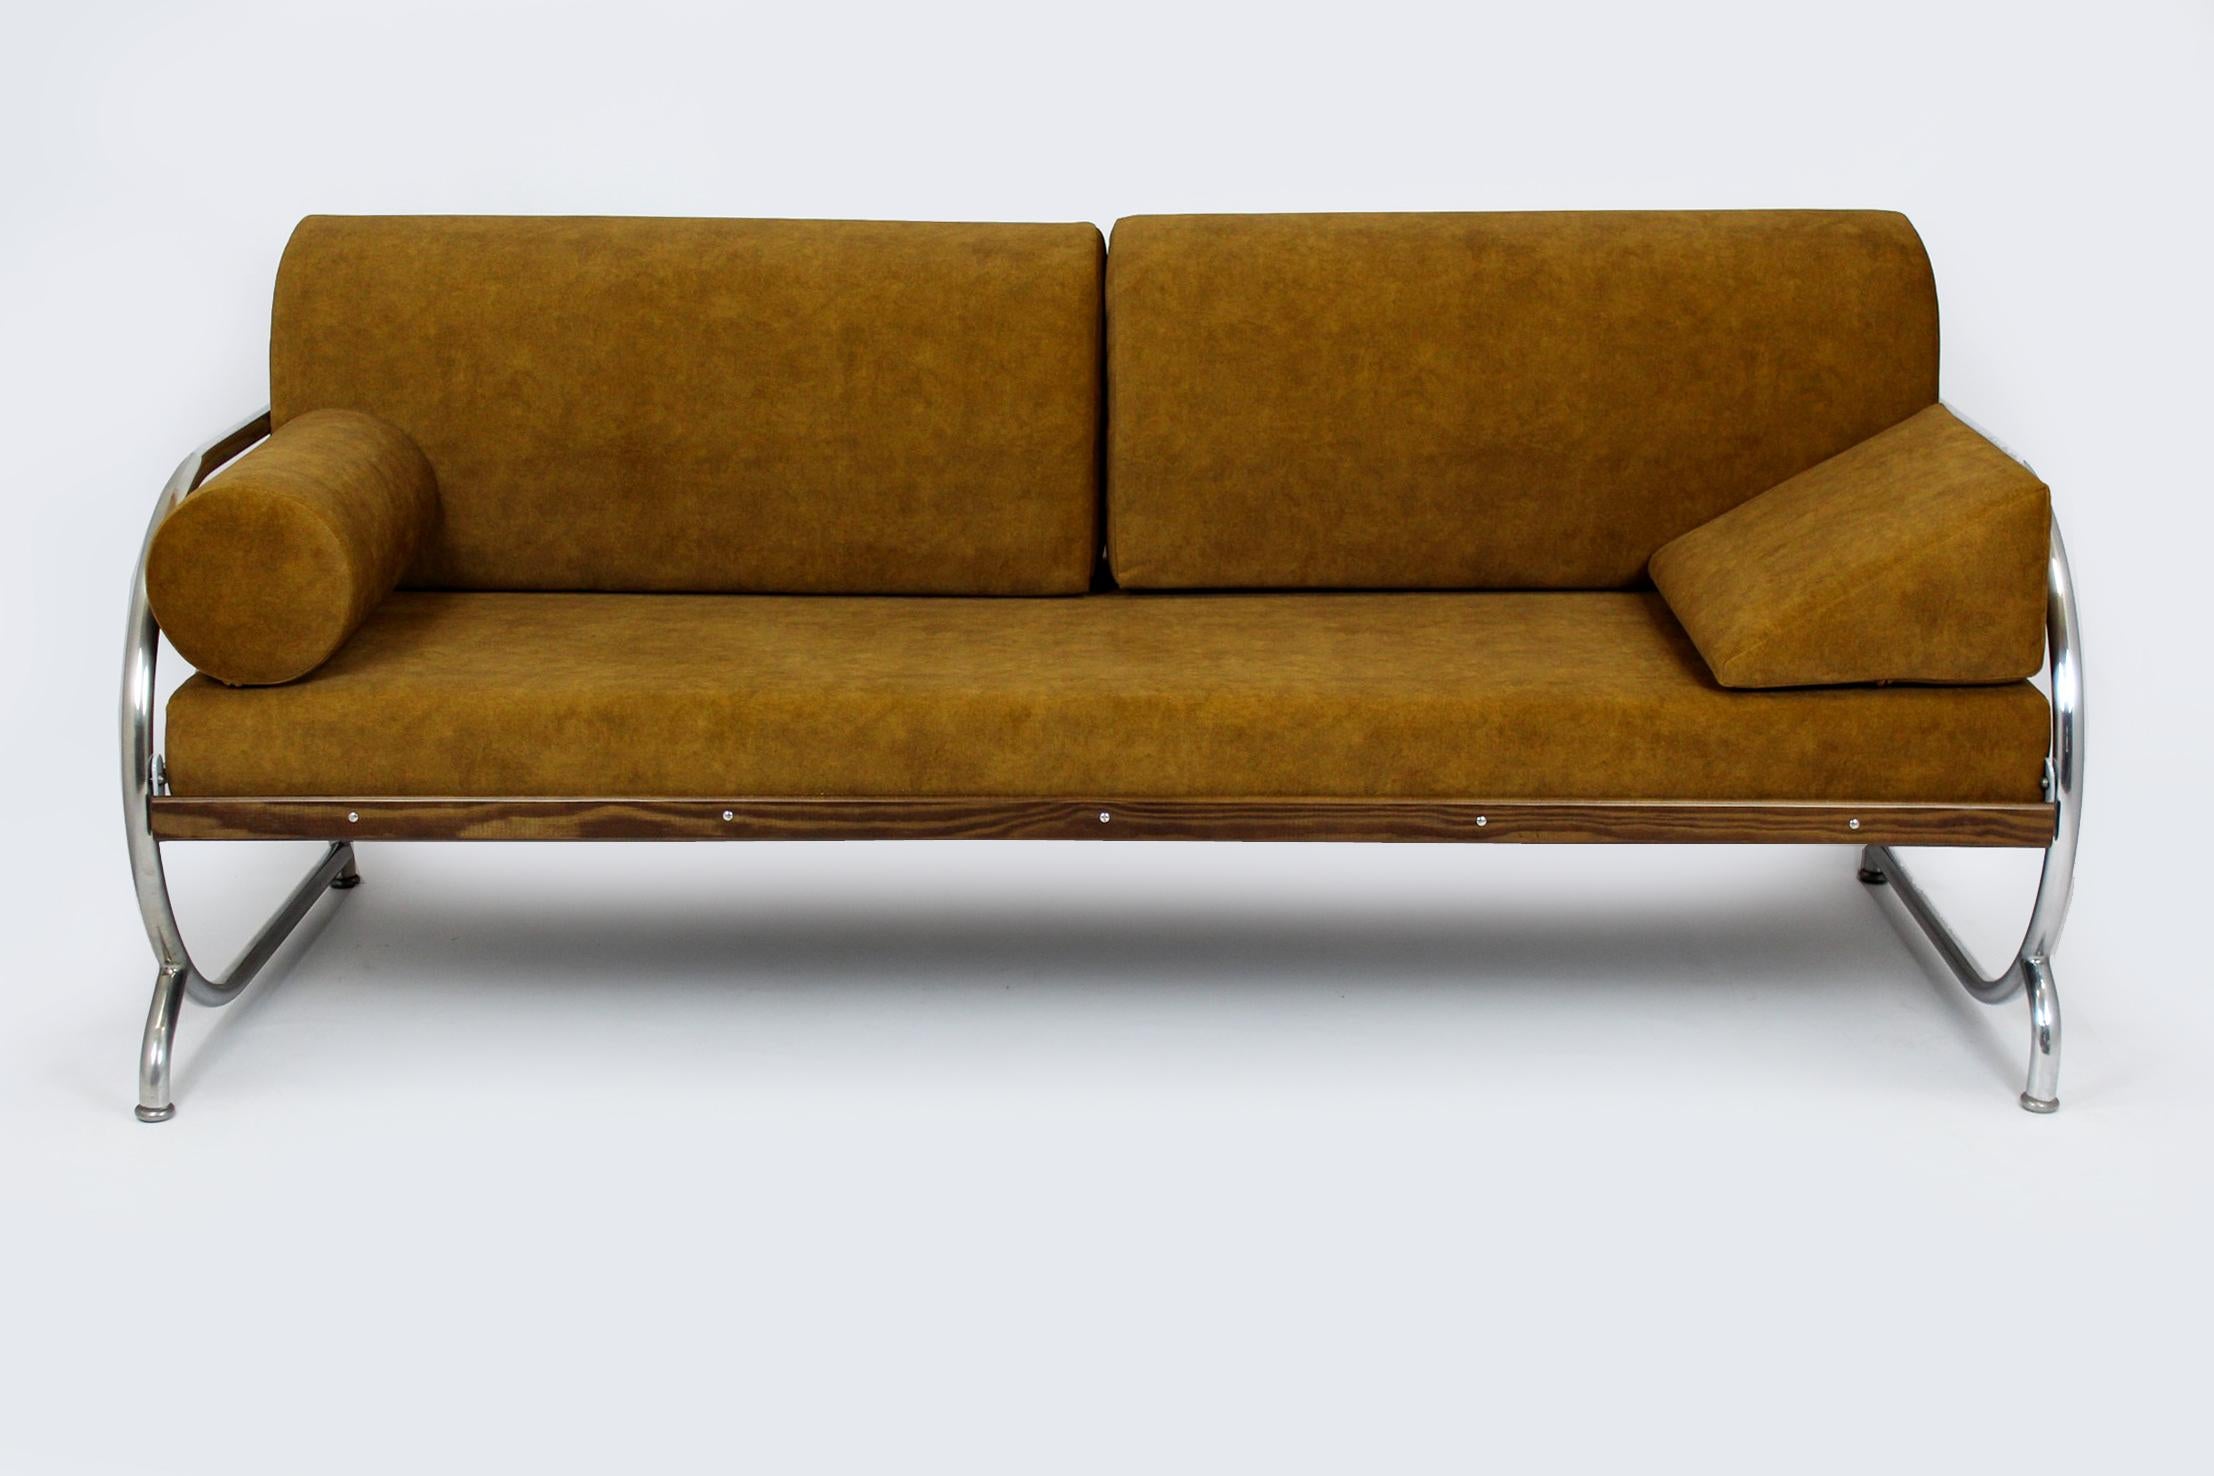 
Ce canapé de style Bauhaus a été produit par Hynek Gottwald dans les années 1930. Le canapé a été entièrement restauré, il est doté de matelas neufs recouverts d'un tissu facile à nettoyer. Les boiseries ont été laquées, finition brillante. Les